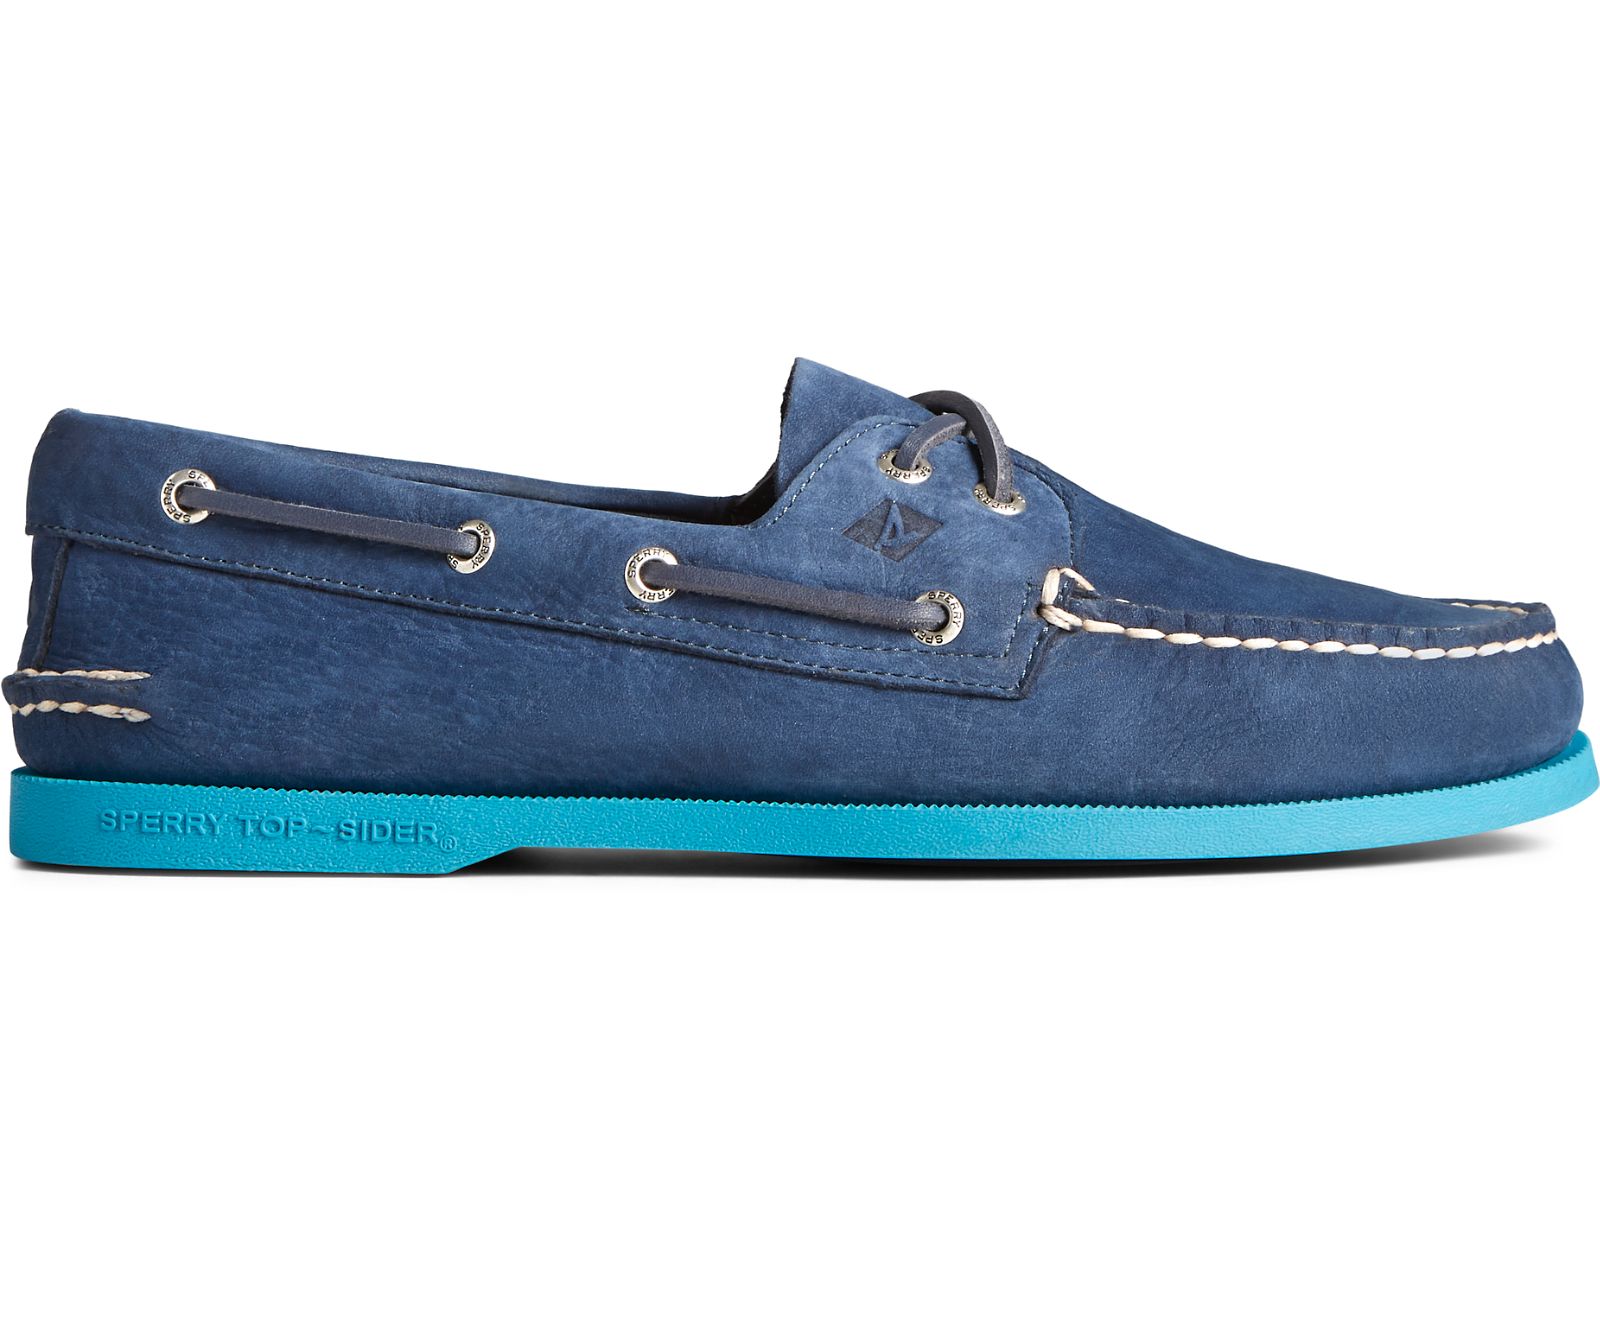 Men's Authentic Original 2-Eye Color Sole Boat Shoe - Navy/Blue